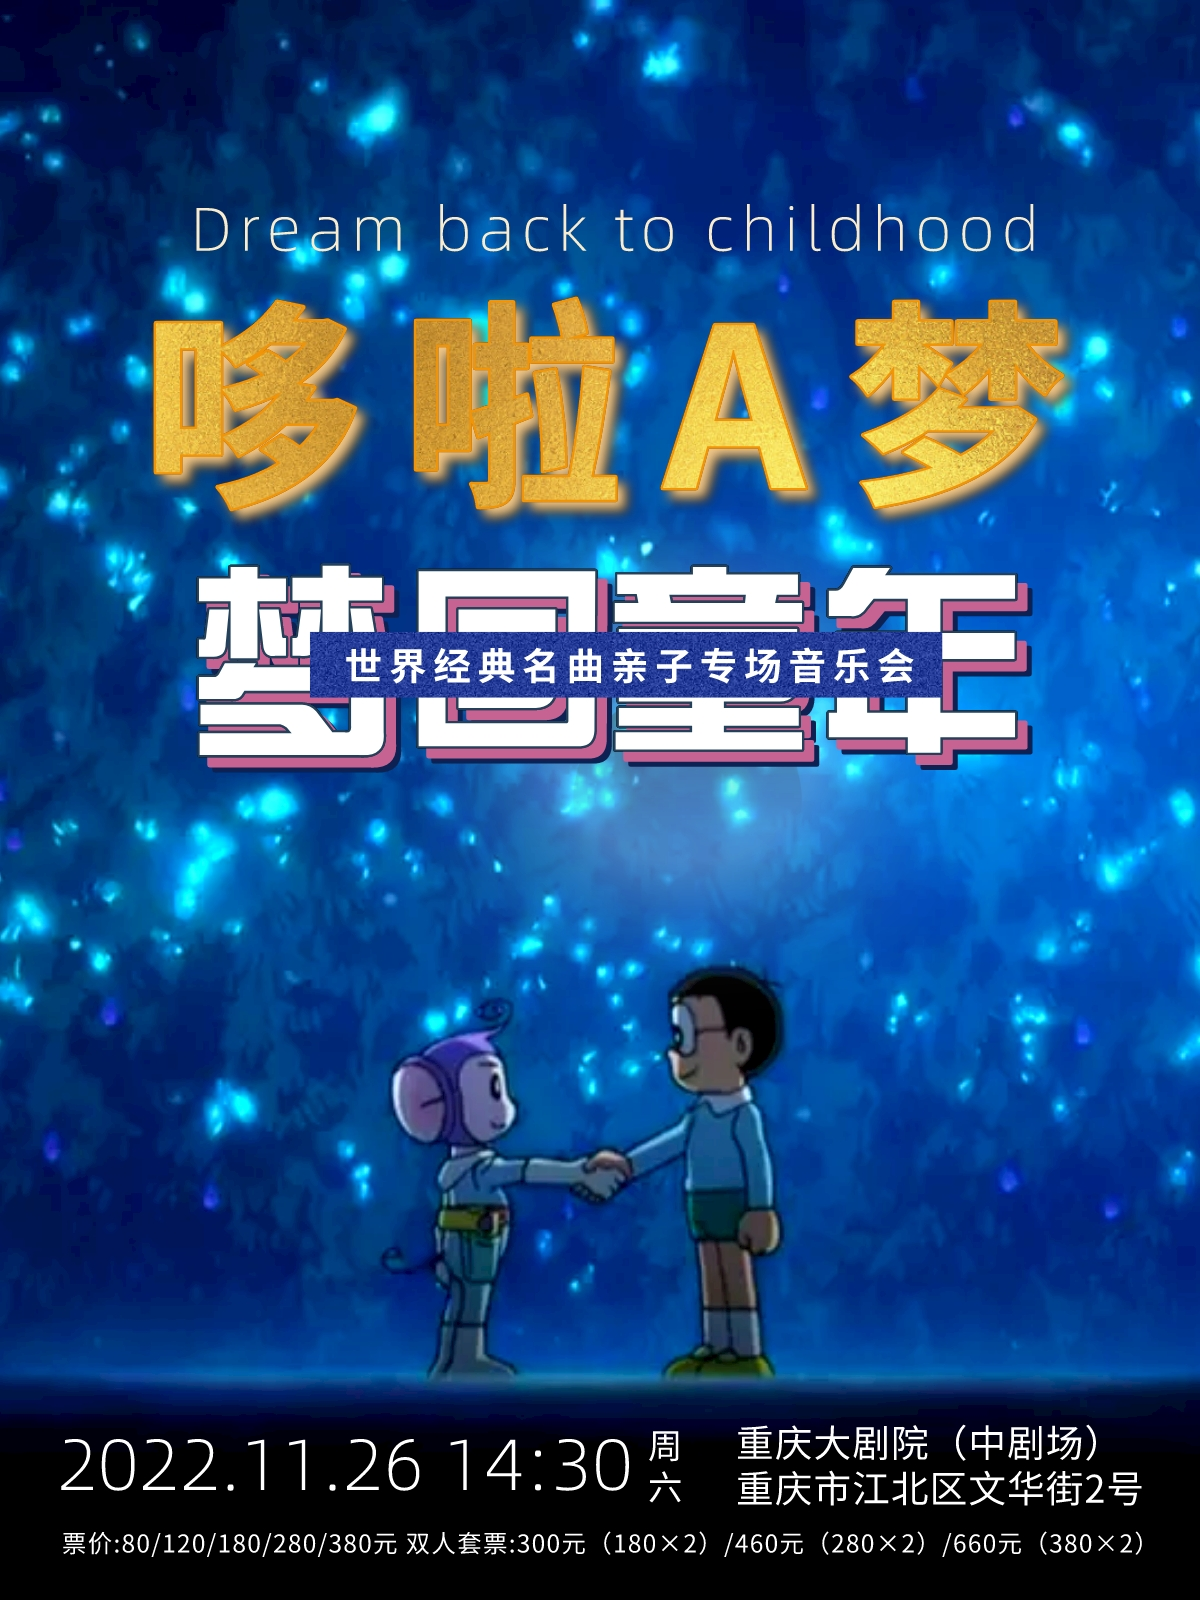 【重庆】《哆啦A梦·梦回童年》世界经典名曲亲子专场音乐会